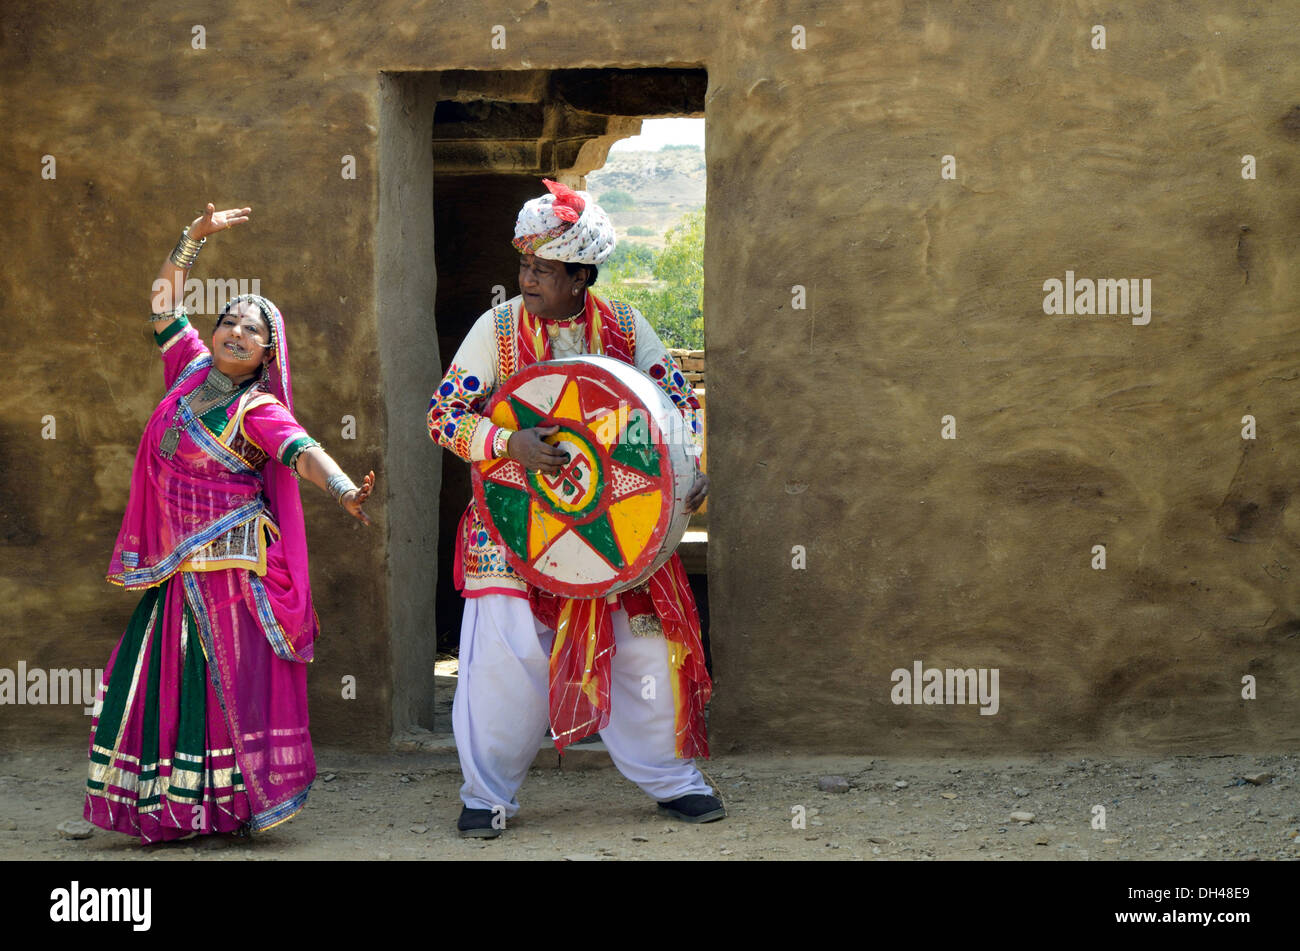 L'homme jouer instruments musique duff et femme dansant Rajasthan Inde Asie M.# 704J et M.# 704J Banque D'Images